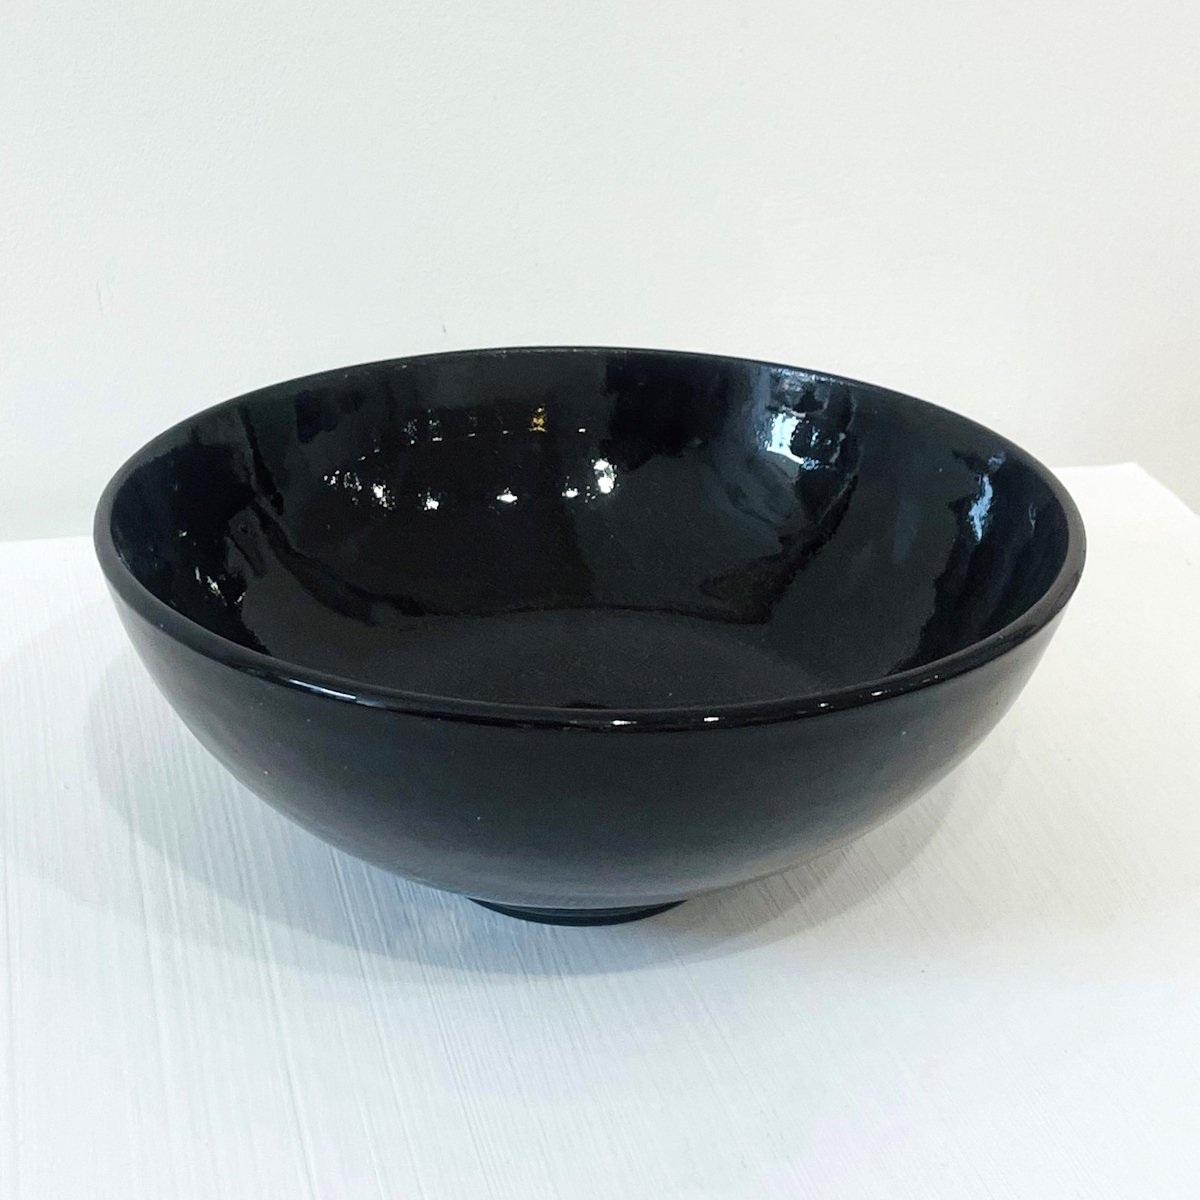 'Large Black Porcelain Bowl' by artist Robert Hunter